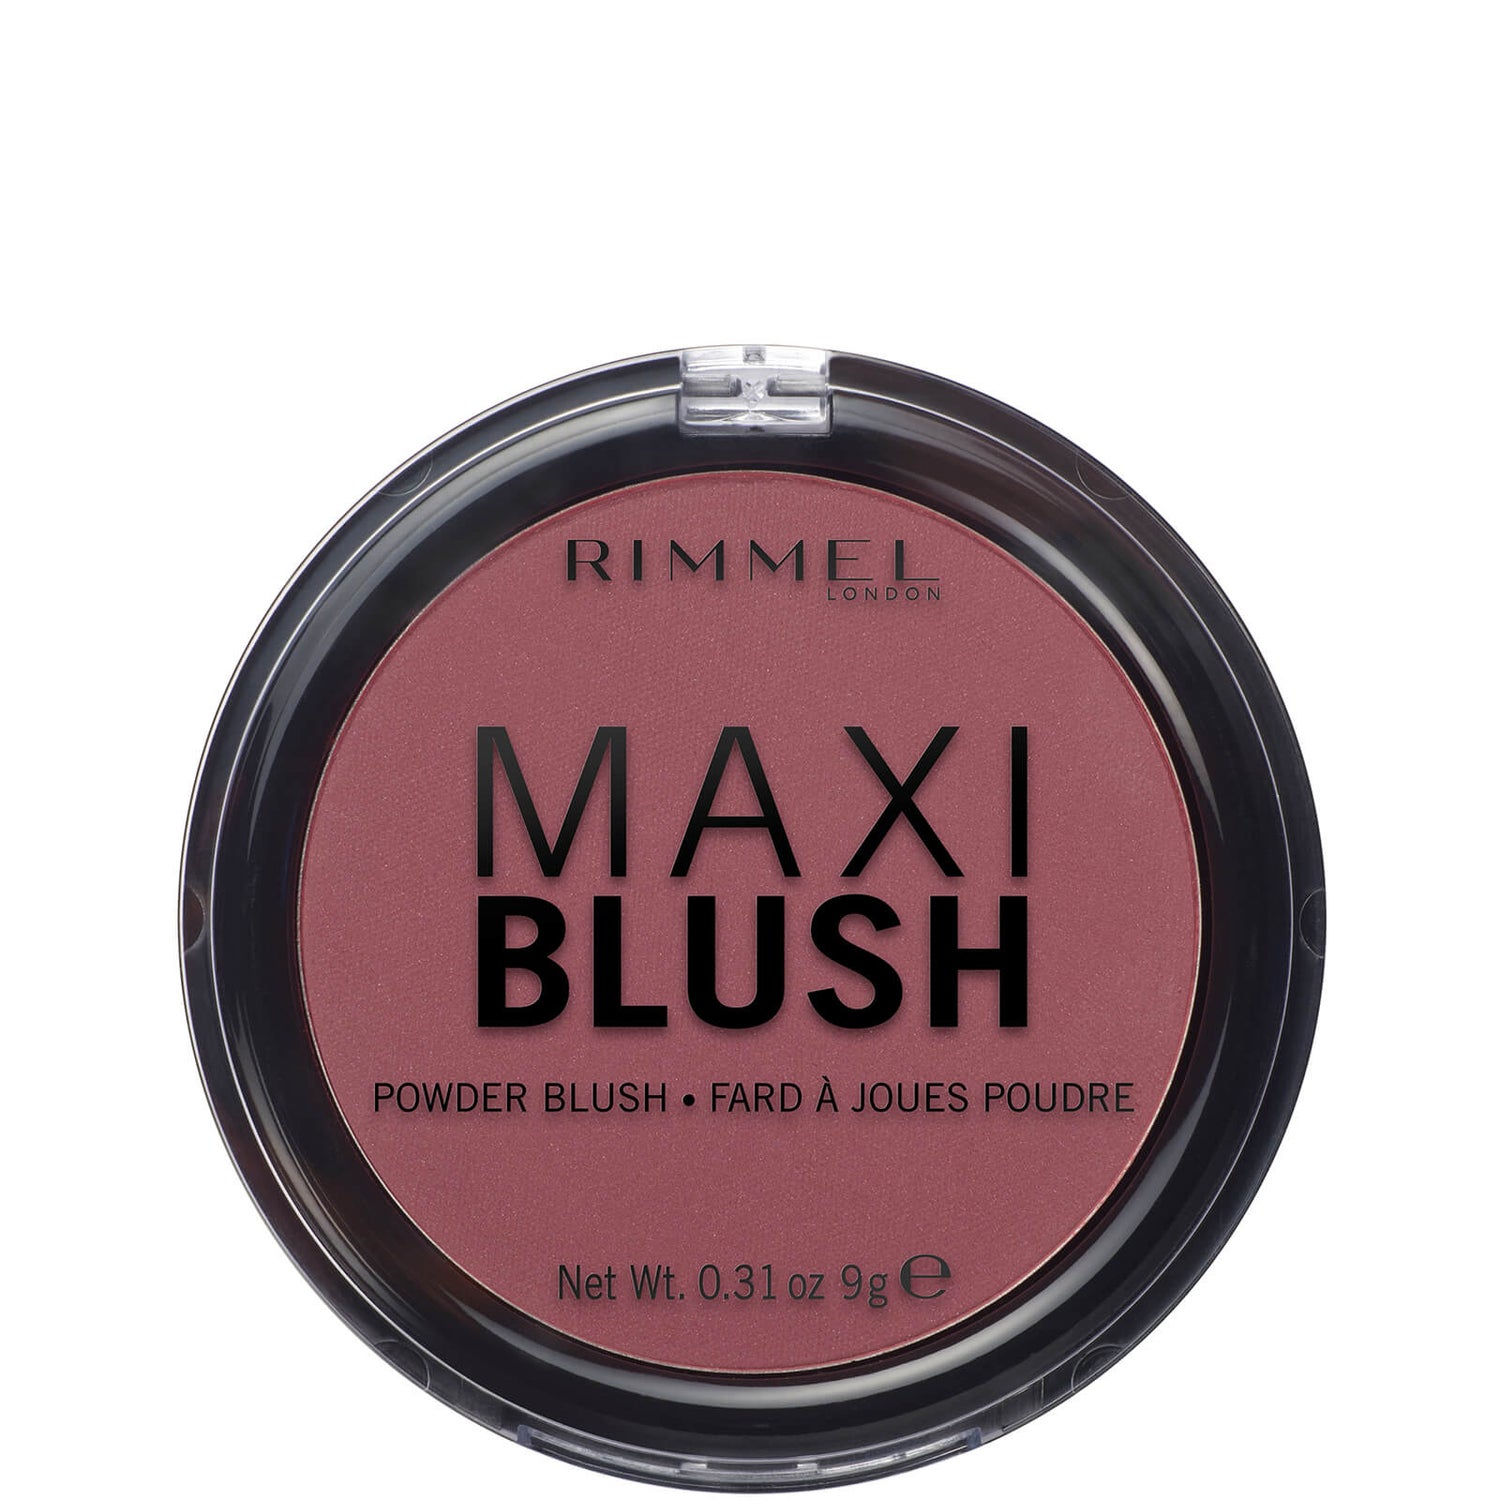 Rimmel London Maxi Blush – 05 – Rendez-Vous, 9g